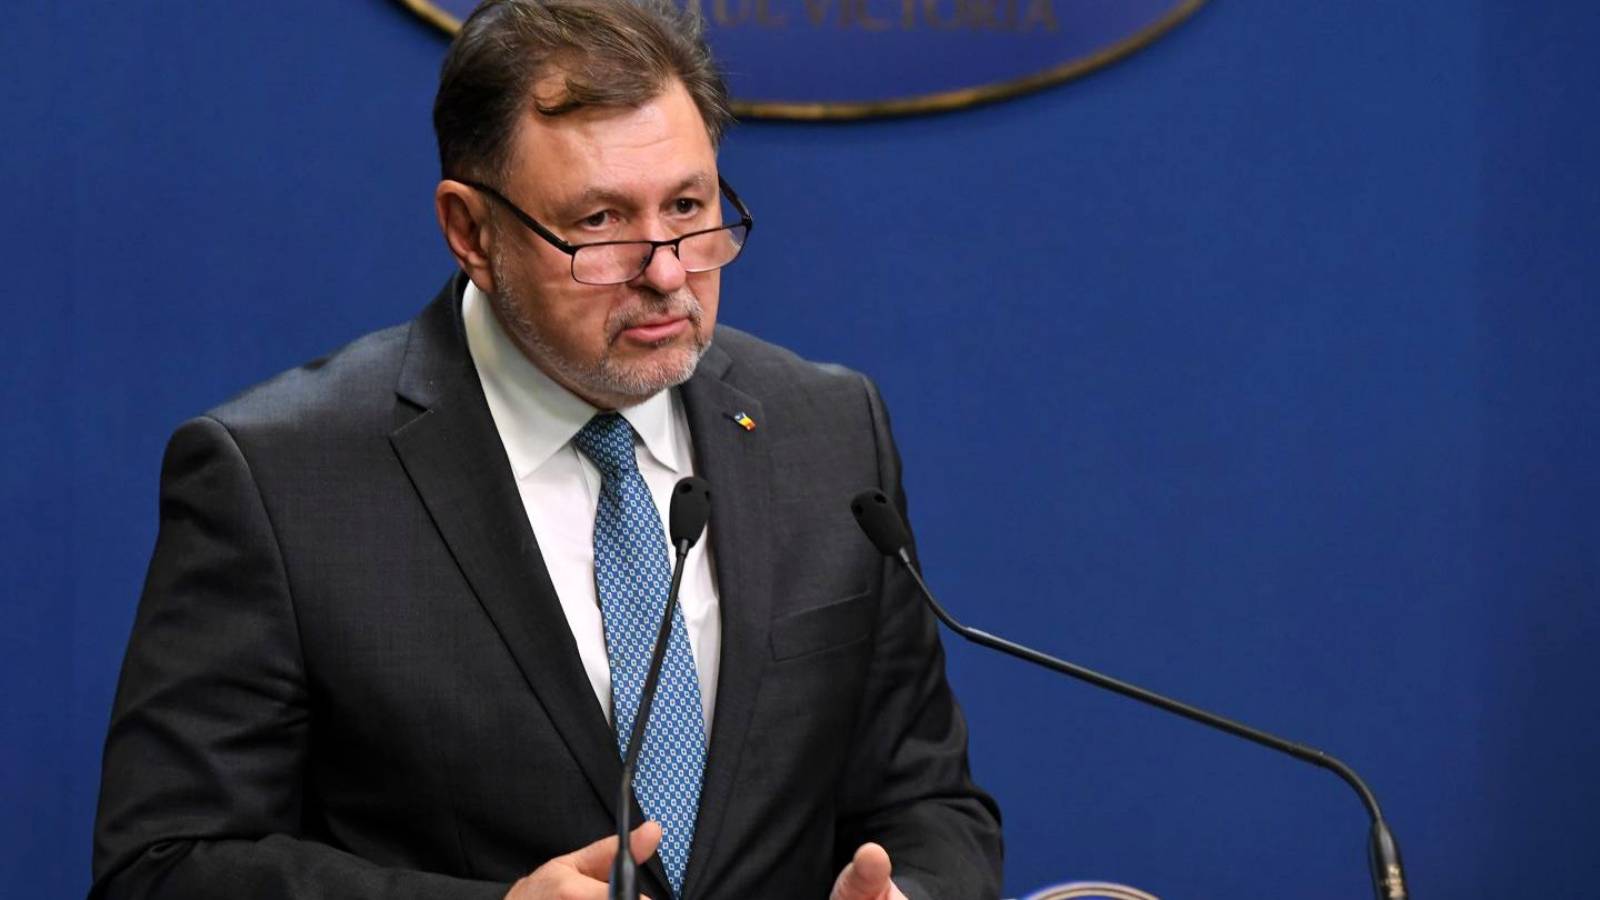 Le ministre de la Santé a signé un arrêté de dernière minute portant sur des changements importants en Roumanie